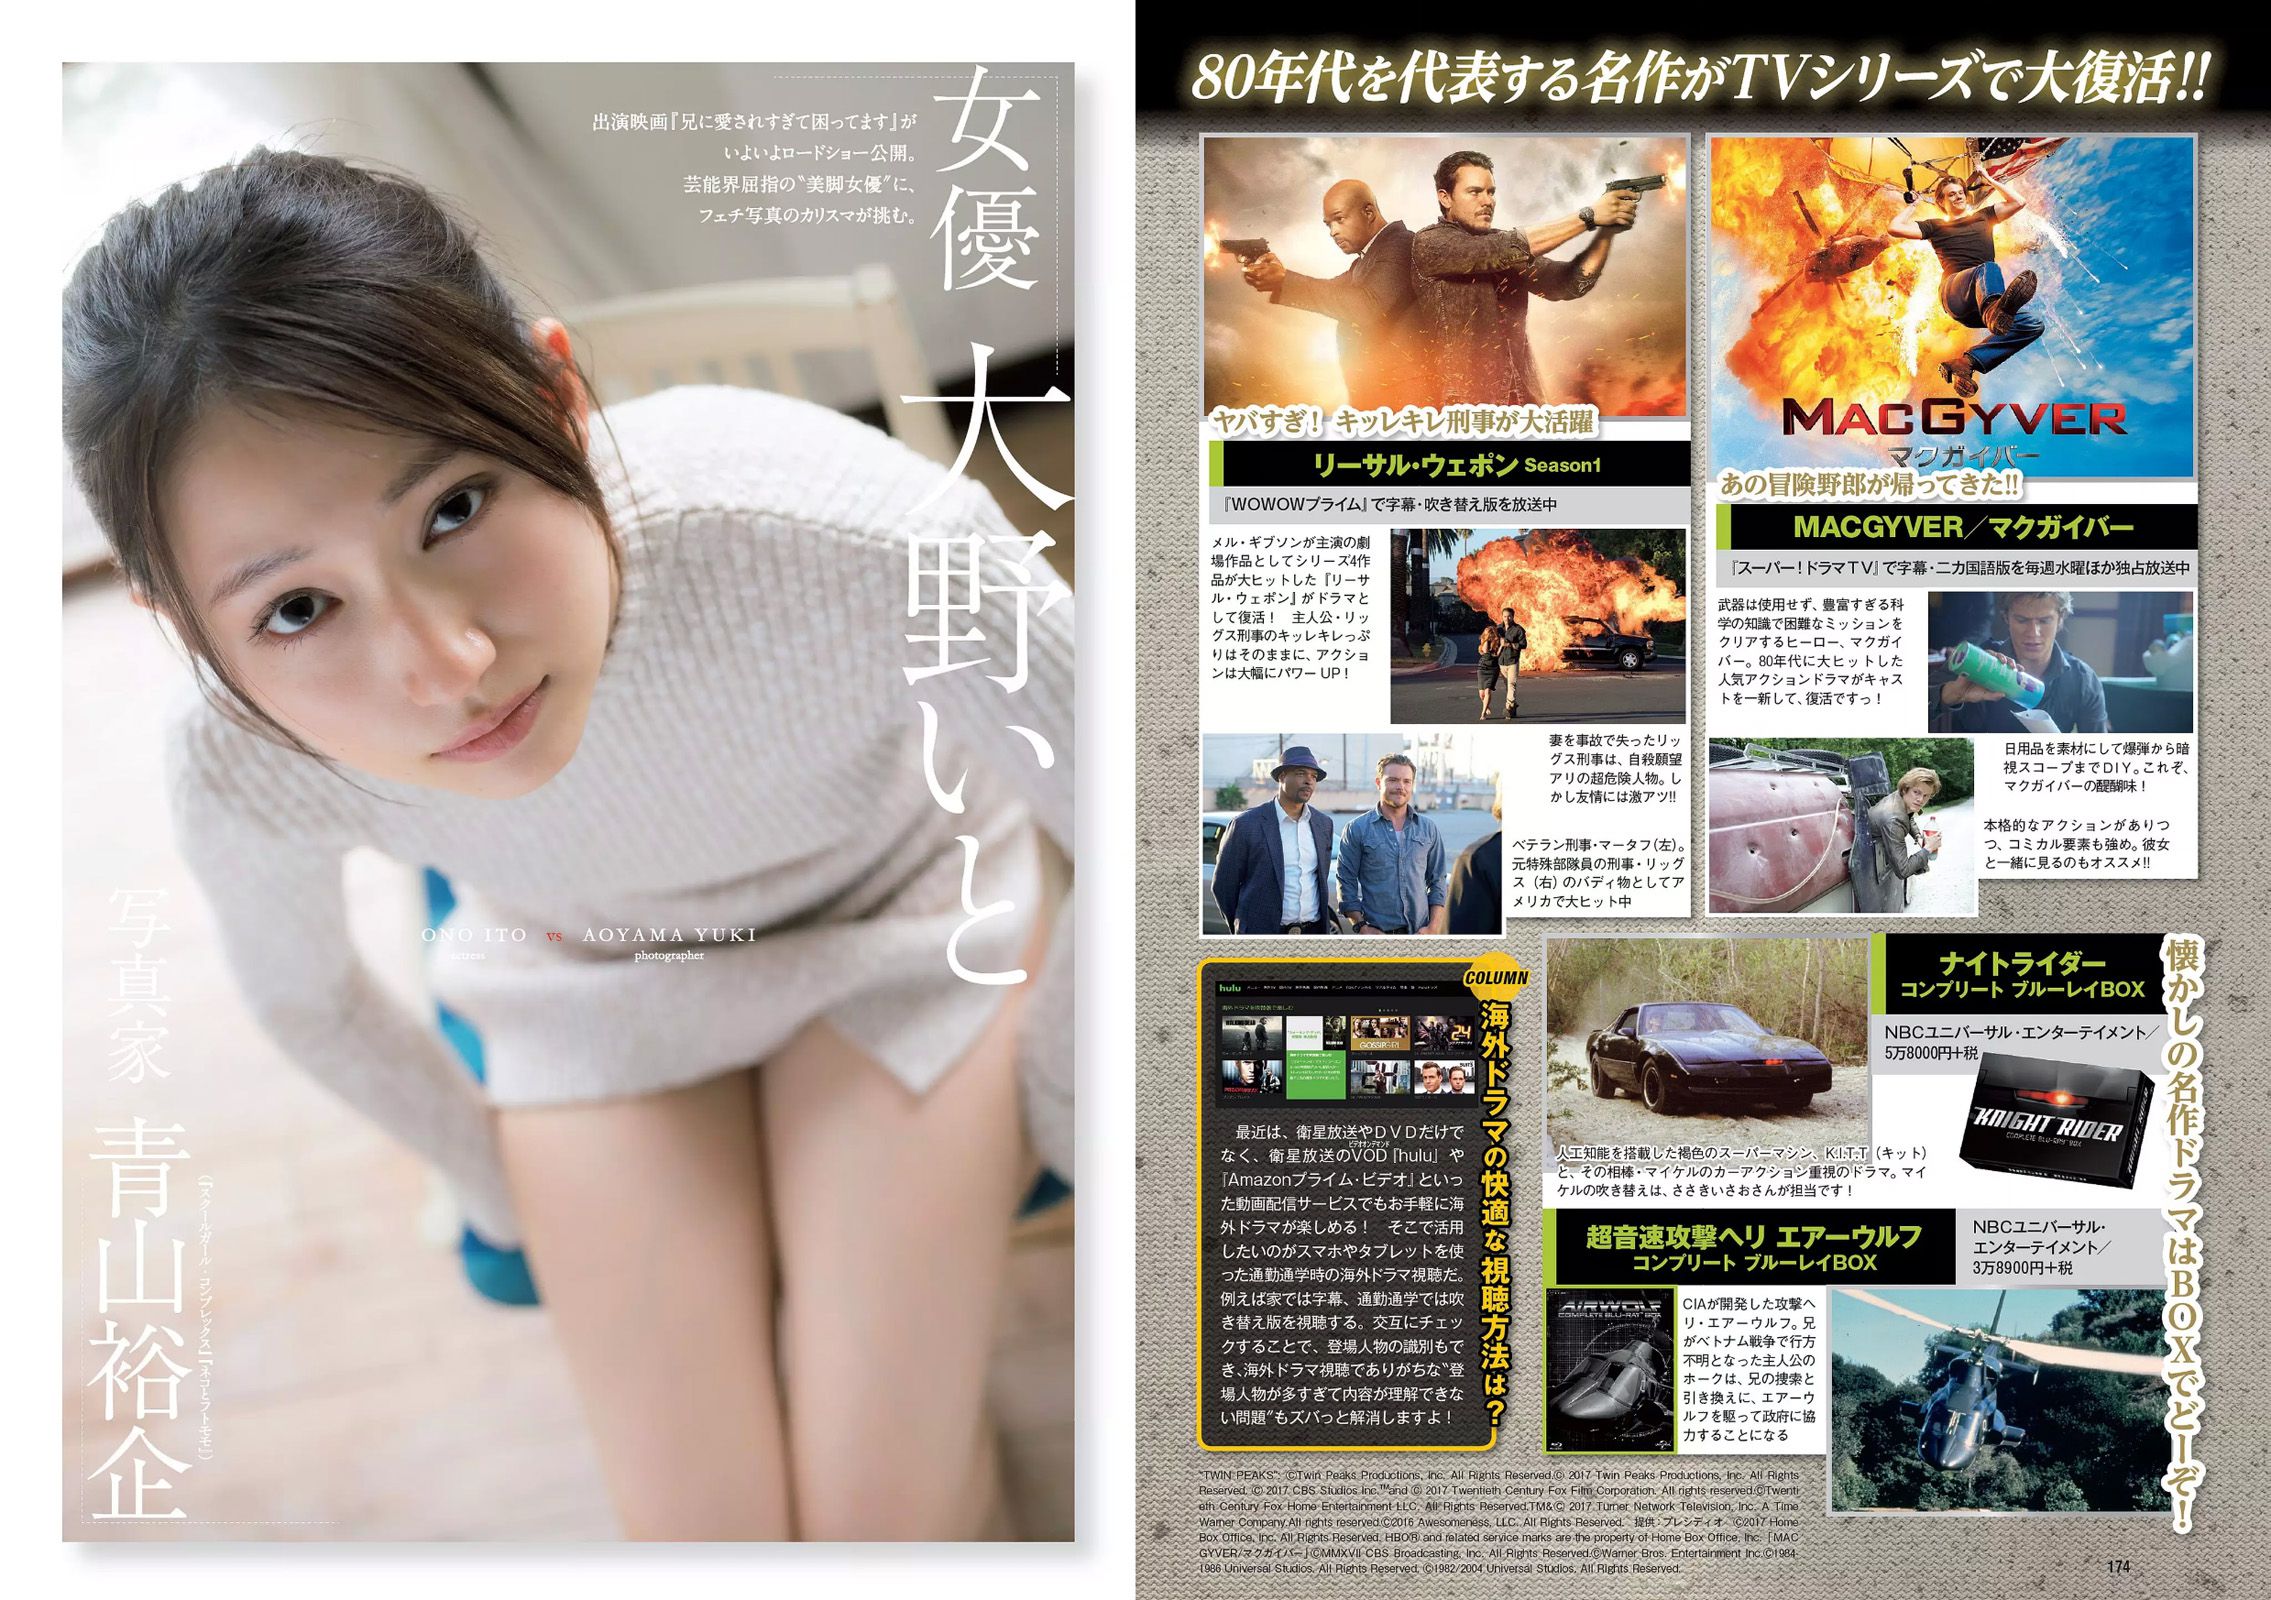 Angela Mei Riho Abiru Yuuna Suzuki Yuno Ohara Moemi Katayama Ito Ohno [Weekly Playboy] 2017 No.28 Fotografia Pagina 23 No.4f2de3